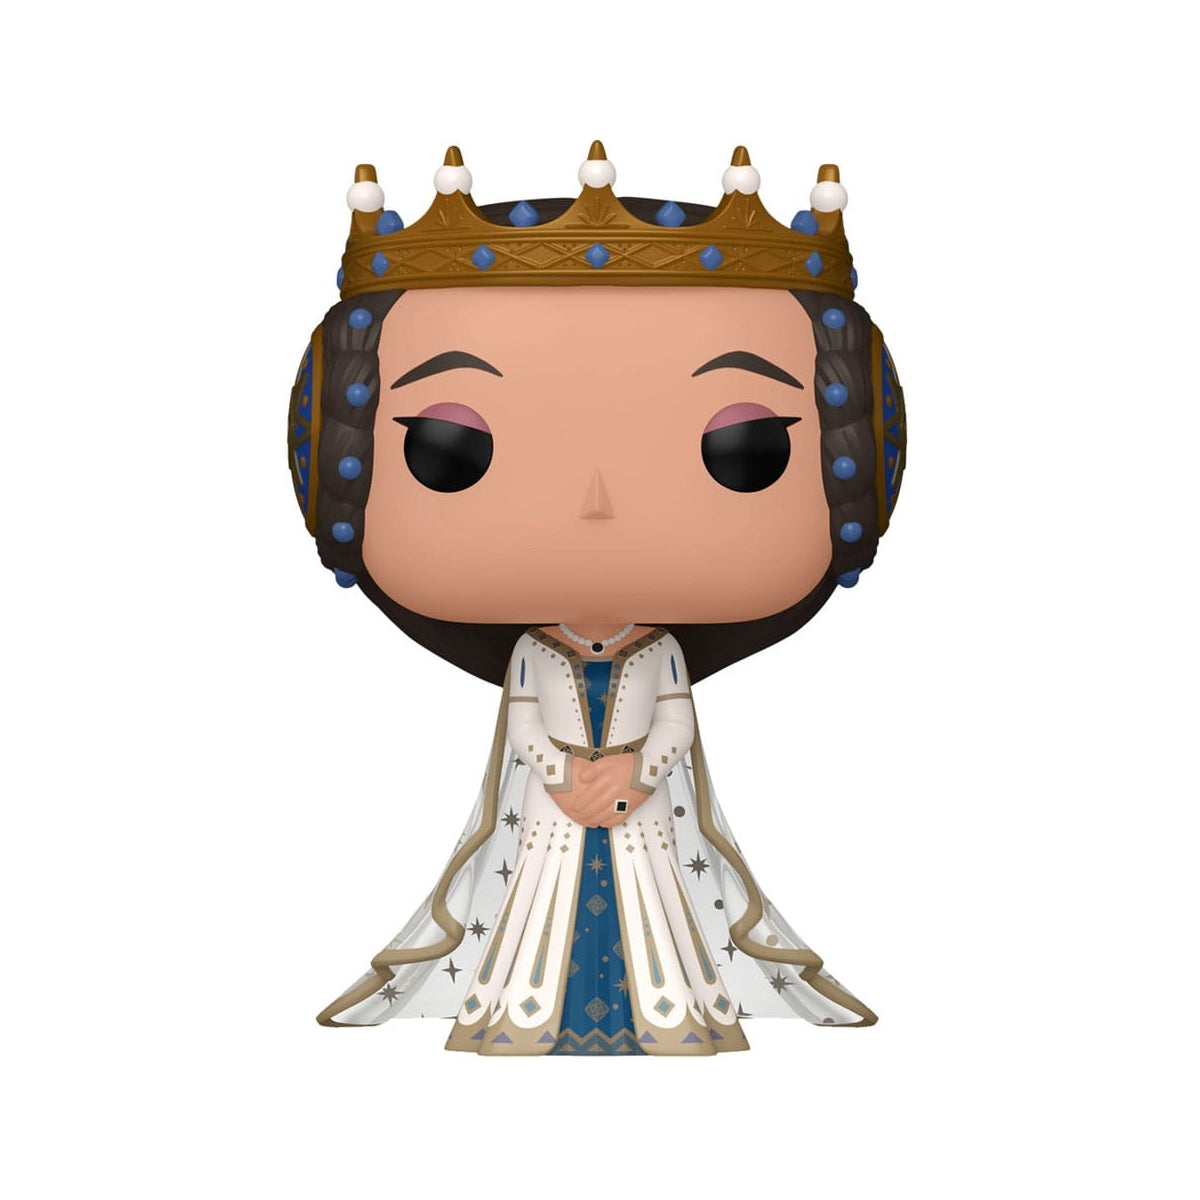 POP! Disney -Wish Queen Amaya